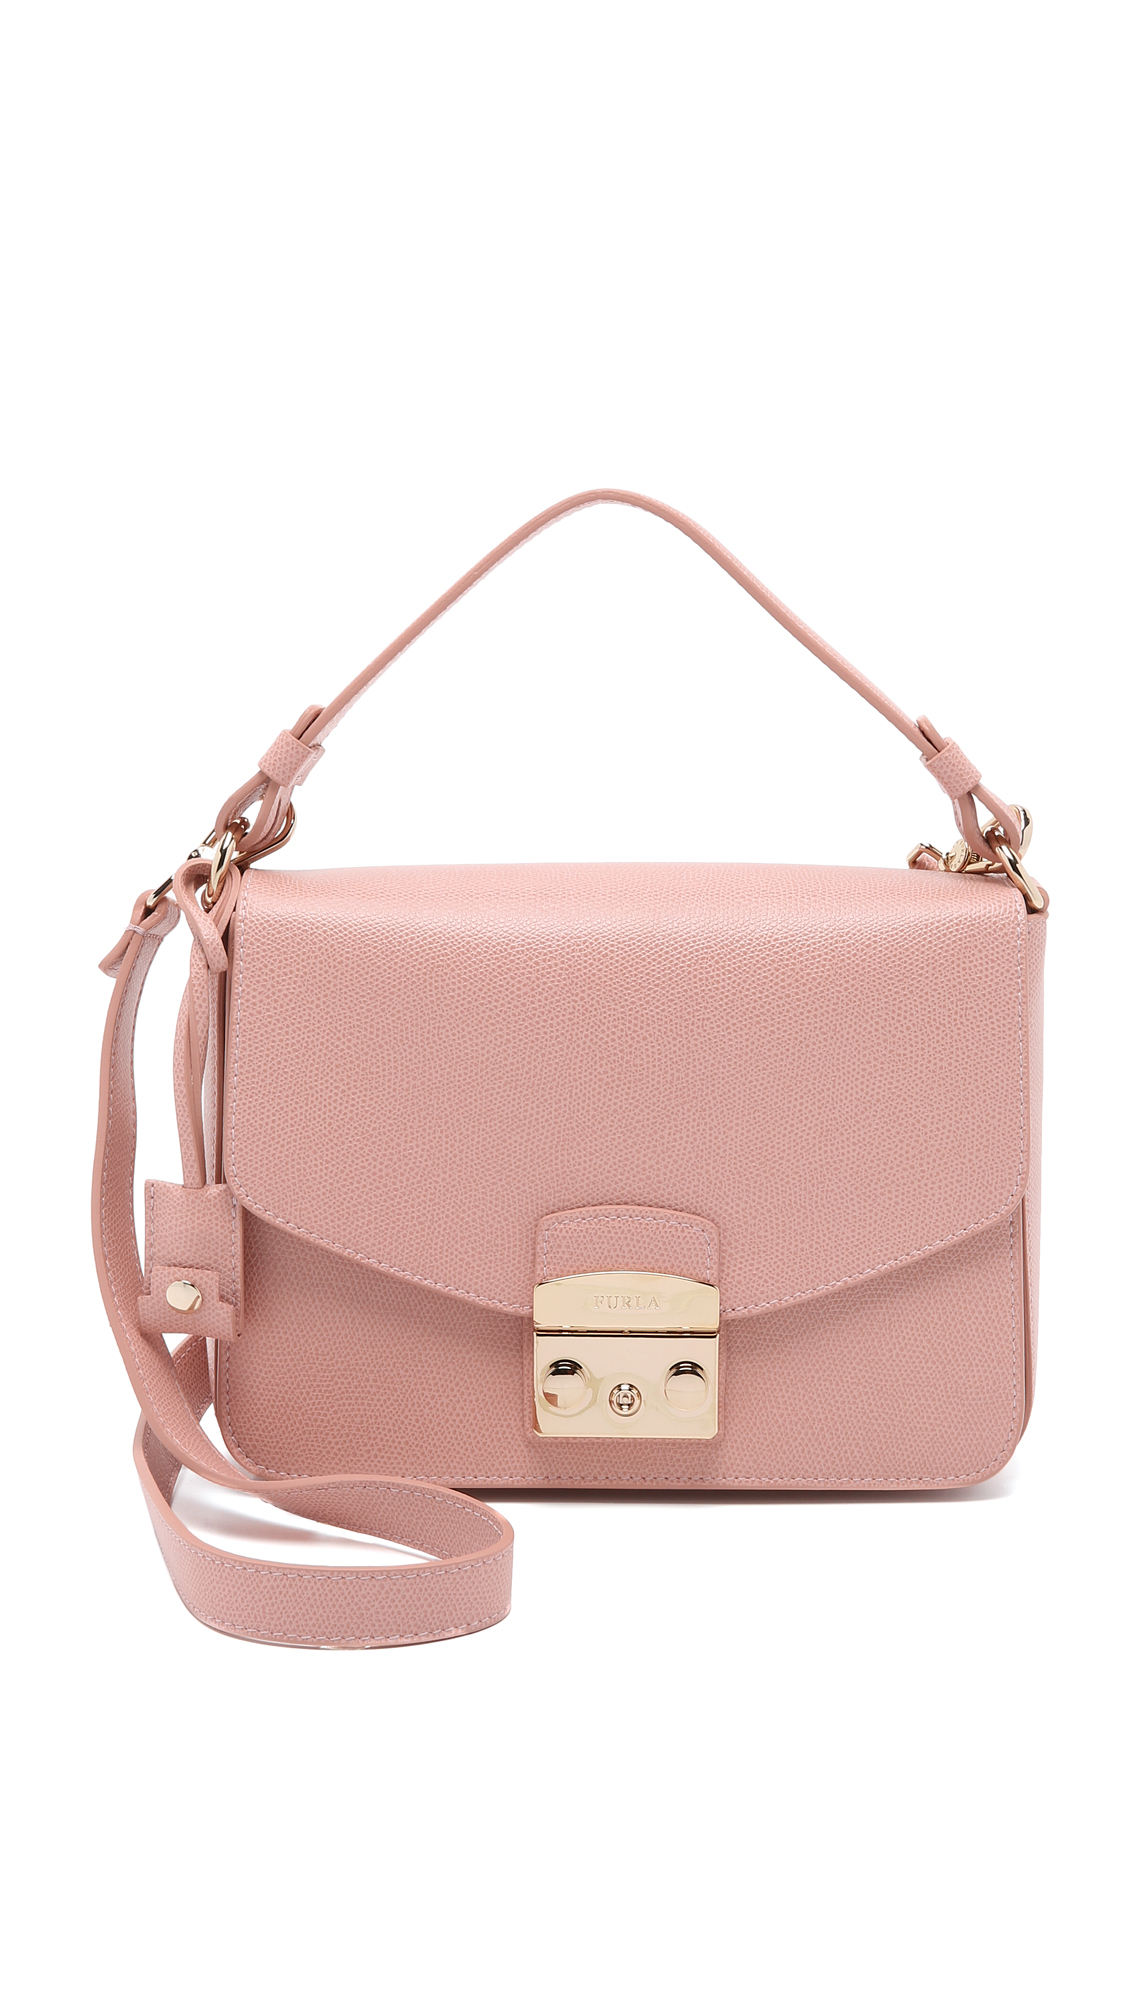 Furla Metropolis Small Shoulder Bag in Pink - Lyst